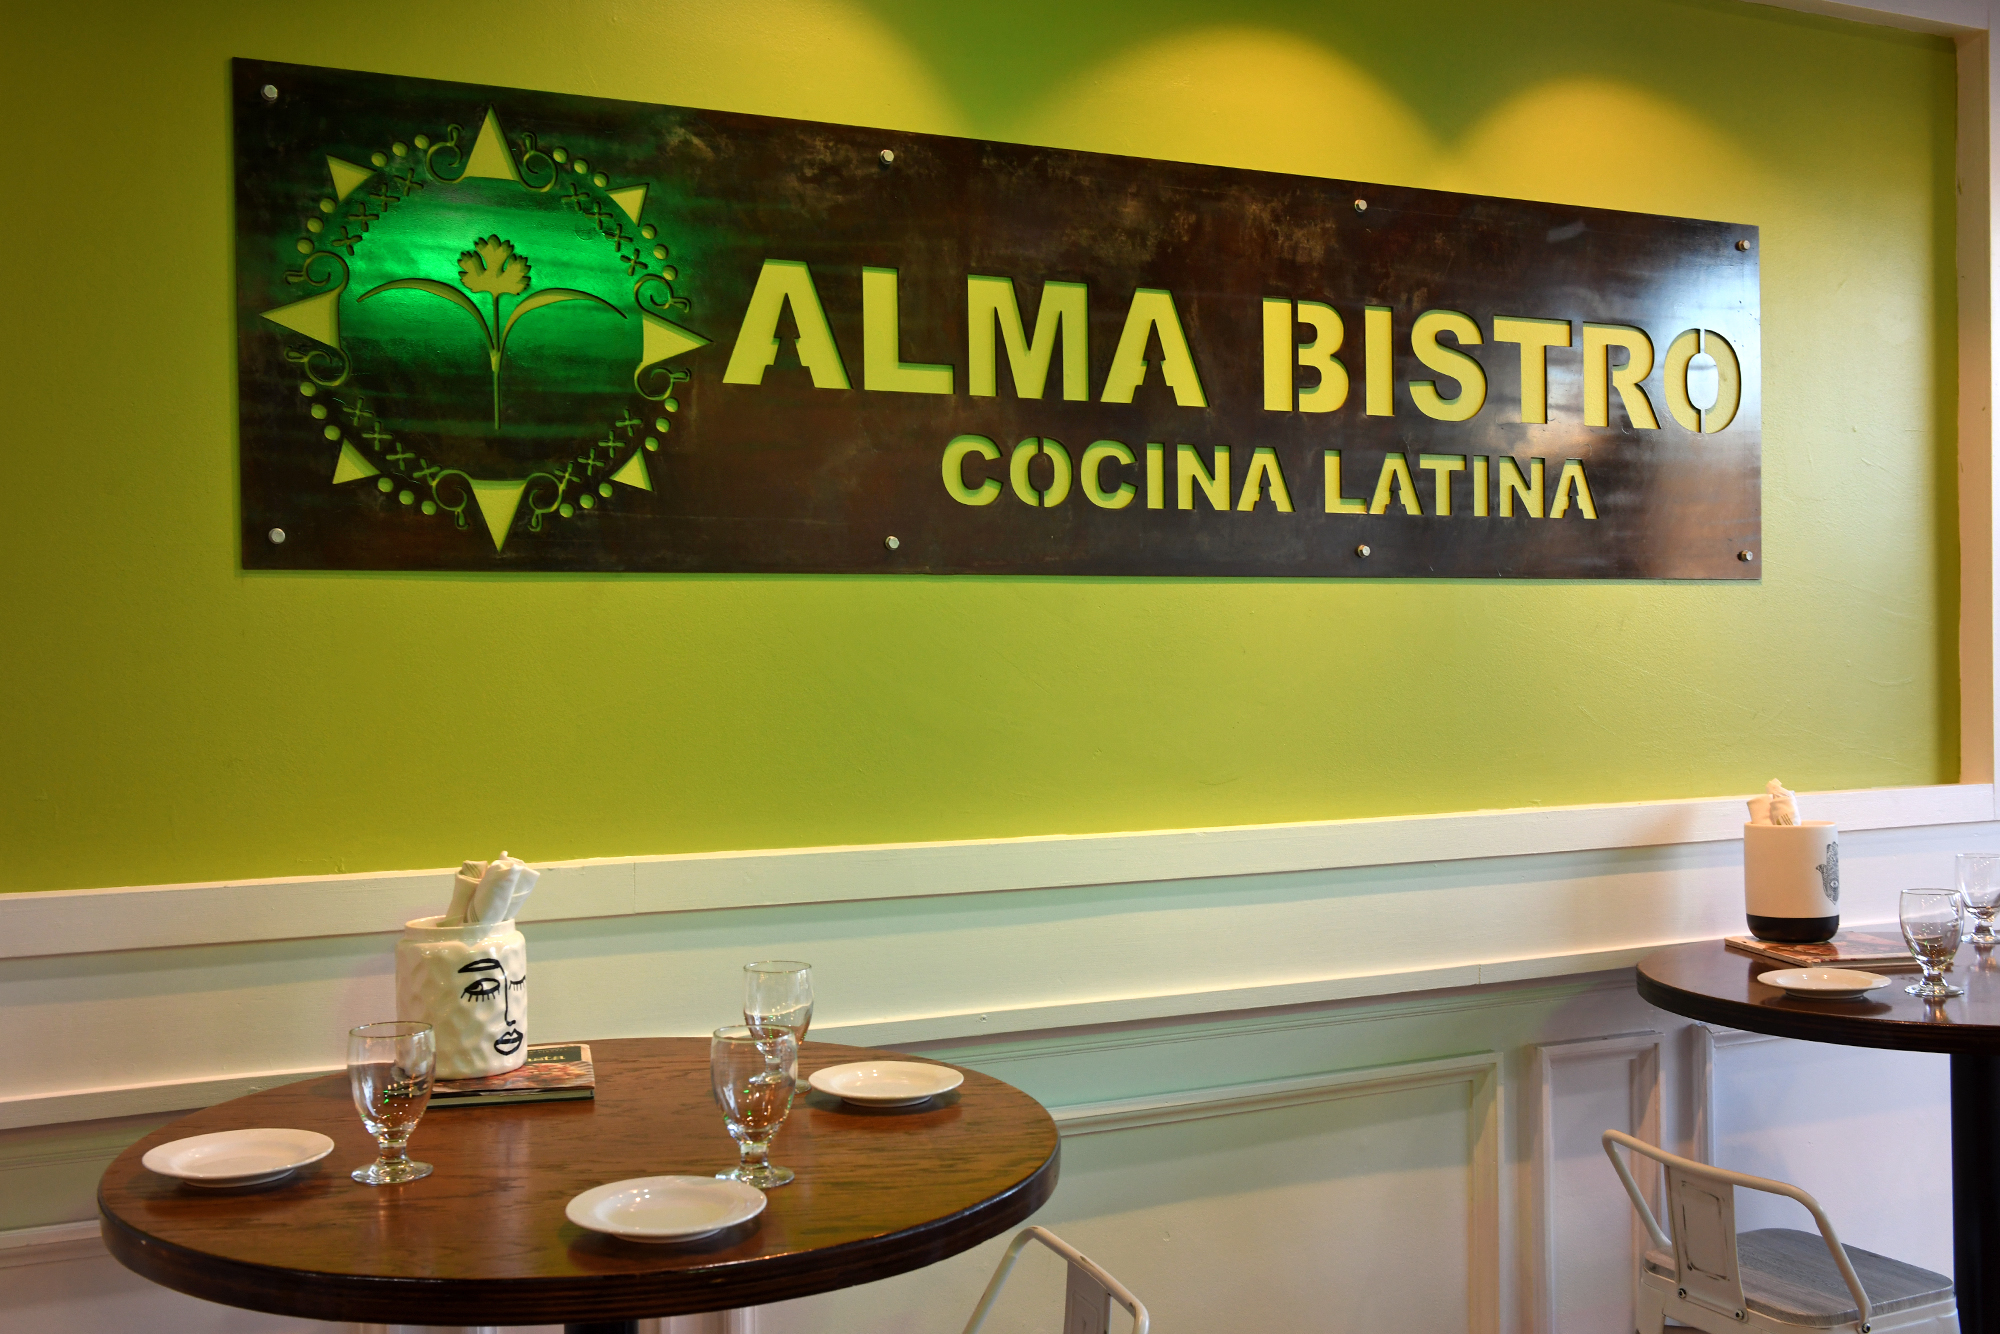 Nuevo-Latino opens restaurant, Alma Norwalk in Bistro, a